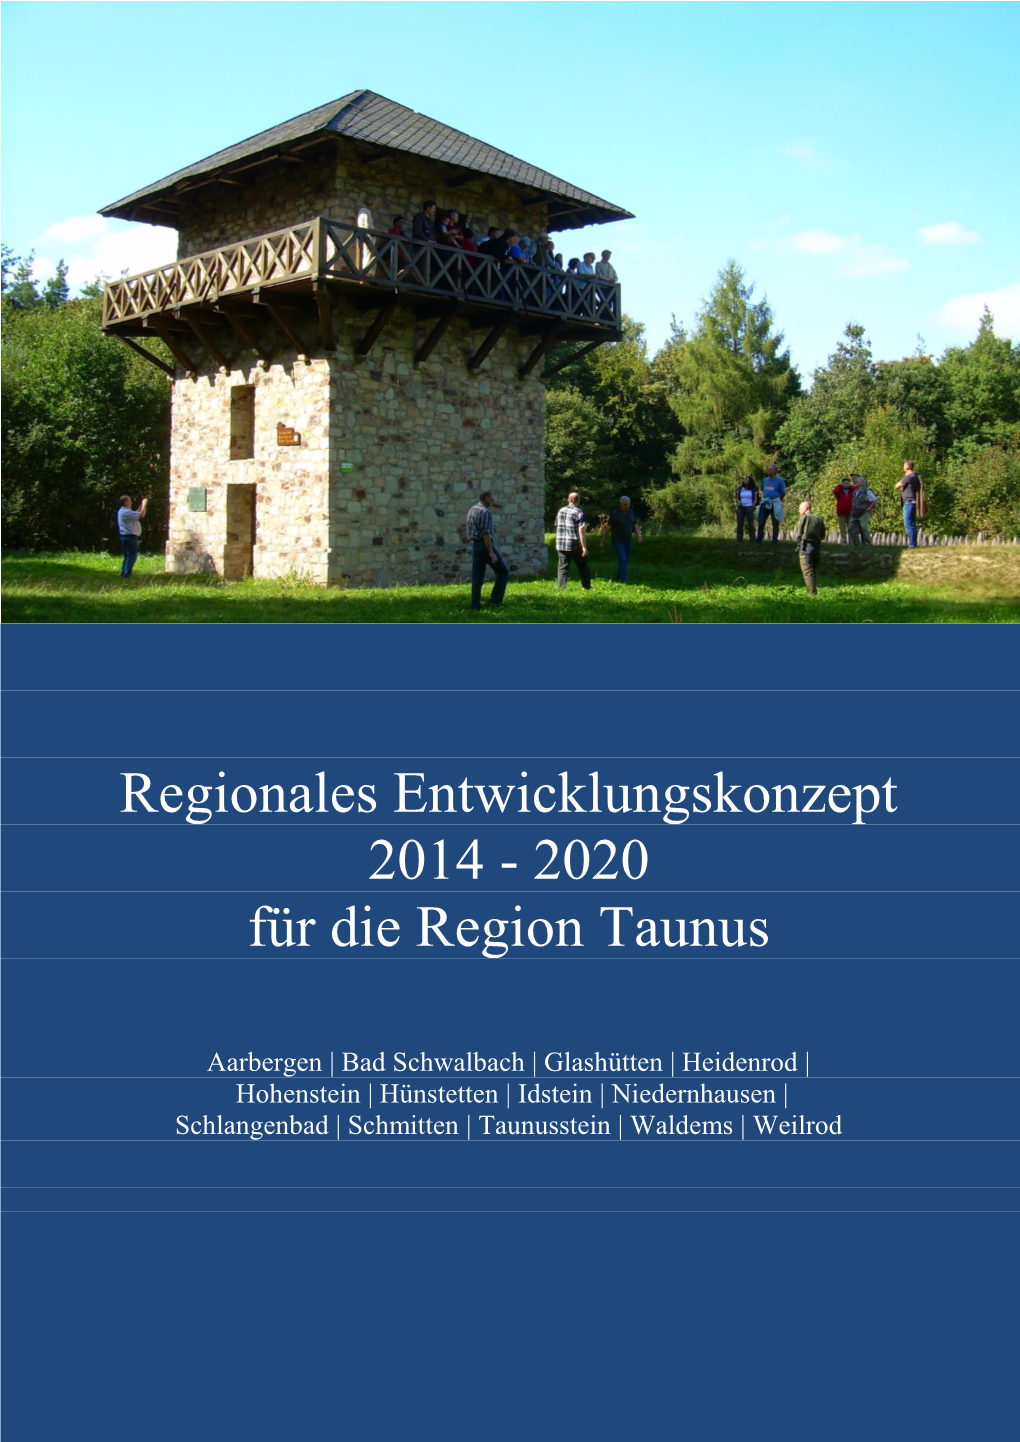 Regionales Entwicklungskonzept Für Die Region Taunus 2014-2020